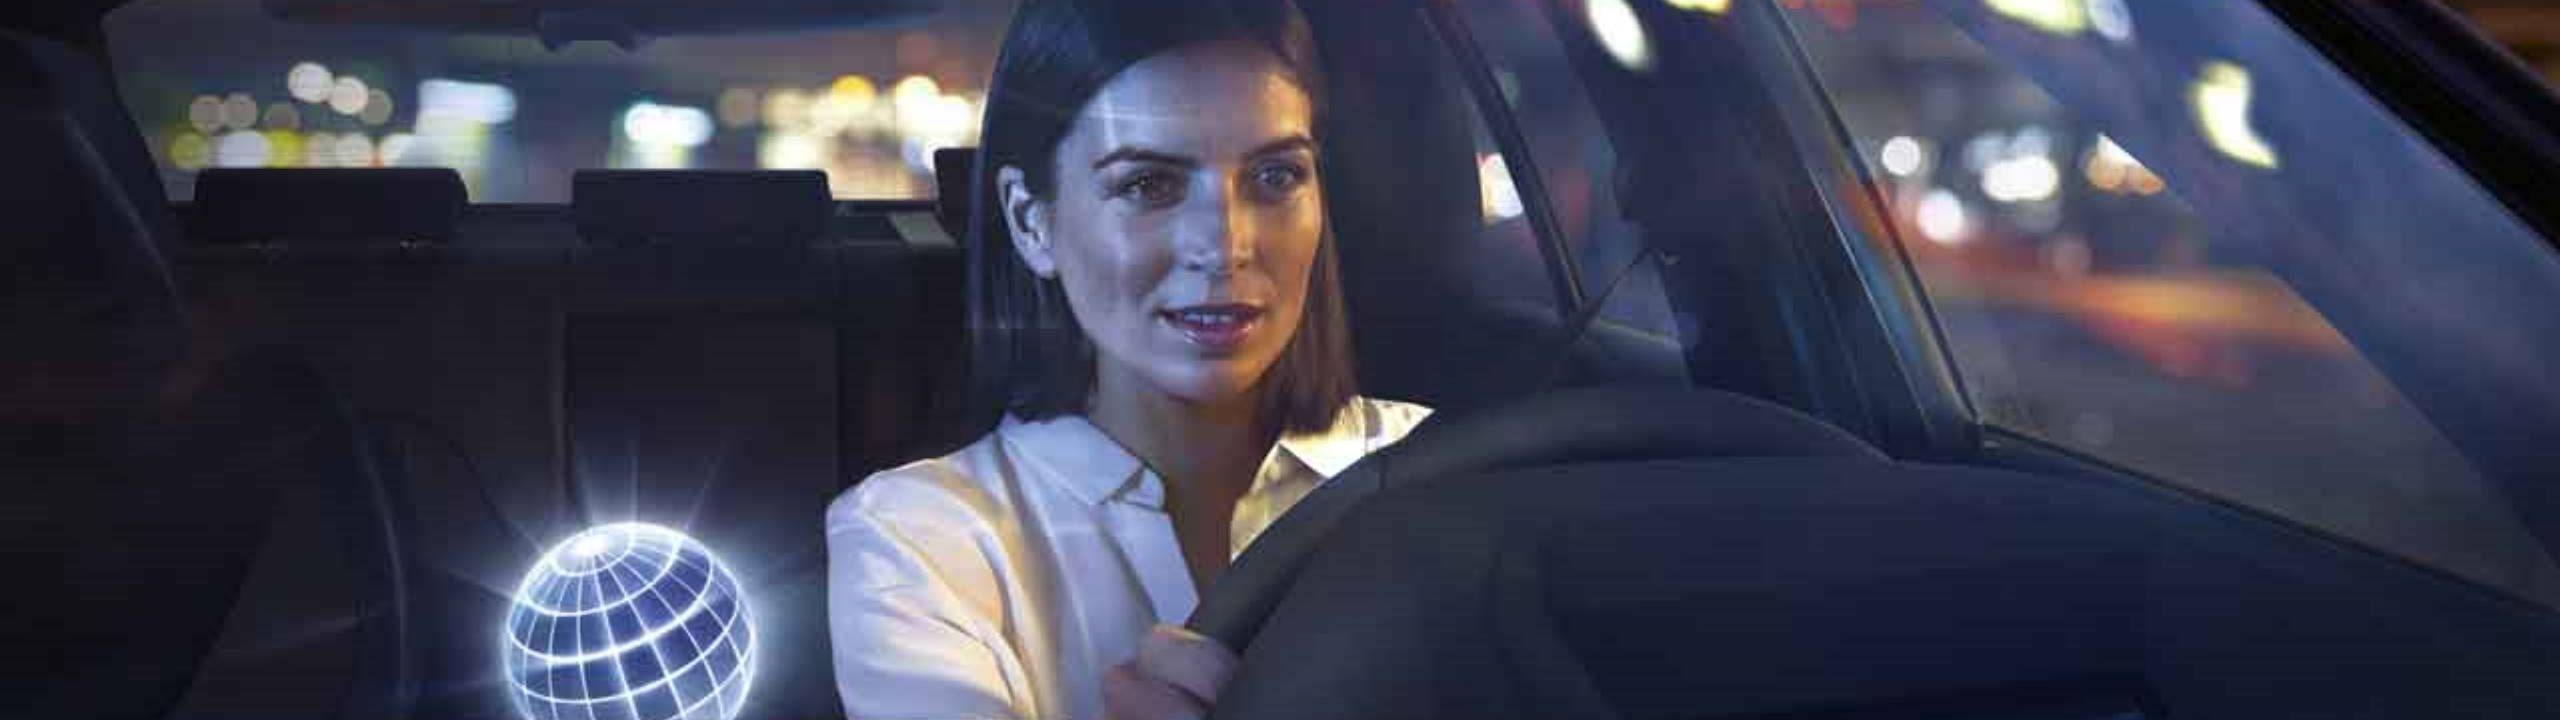 Frau fährt bei Nacht in Ihrem BMW, eine virtuelle Kugel neben Ihr symbolisiert den BMW Personal Assistant